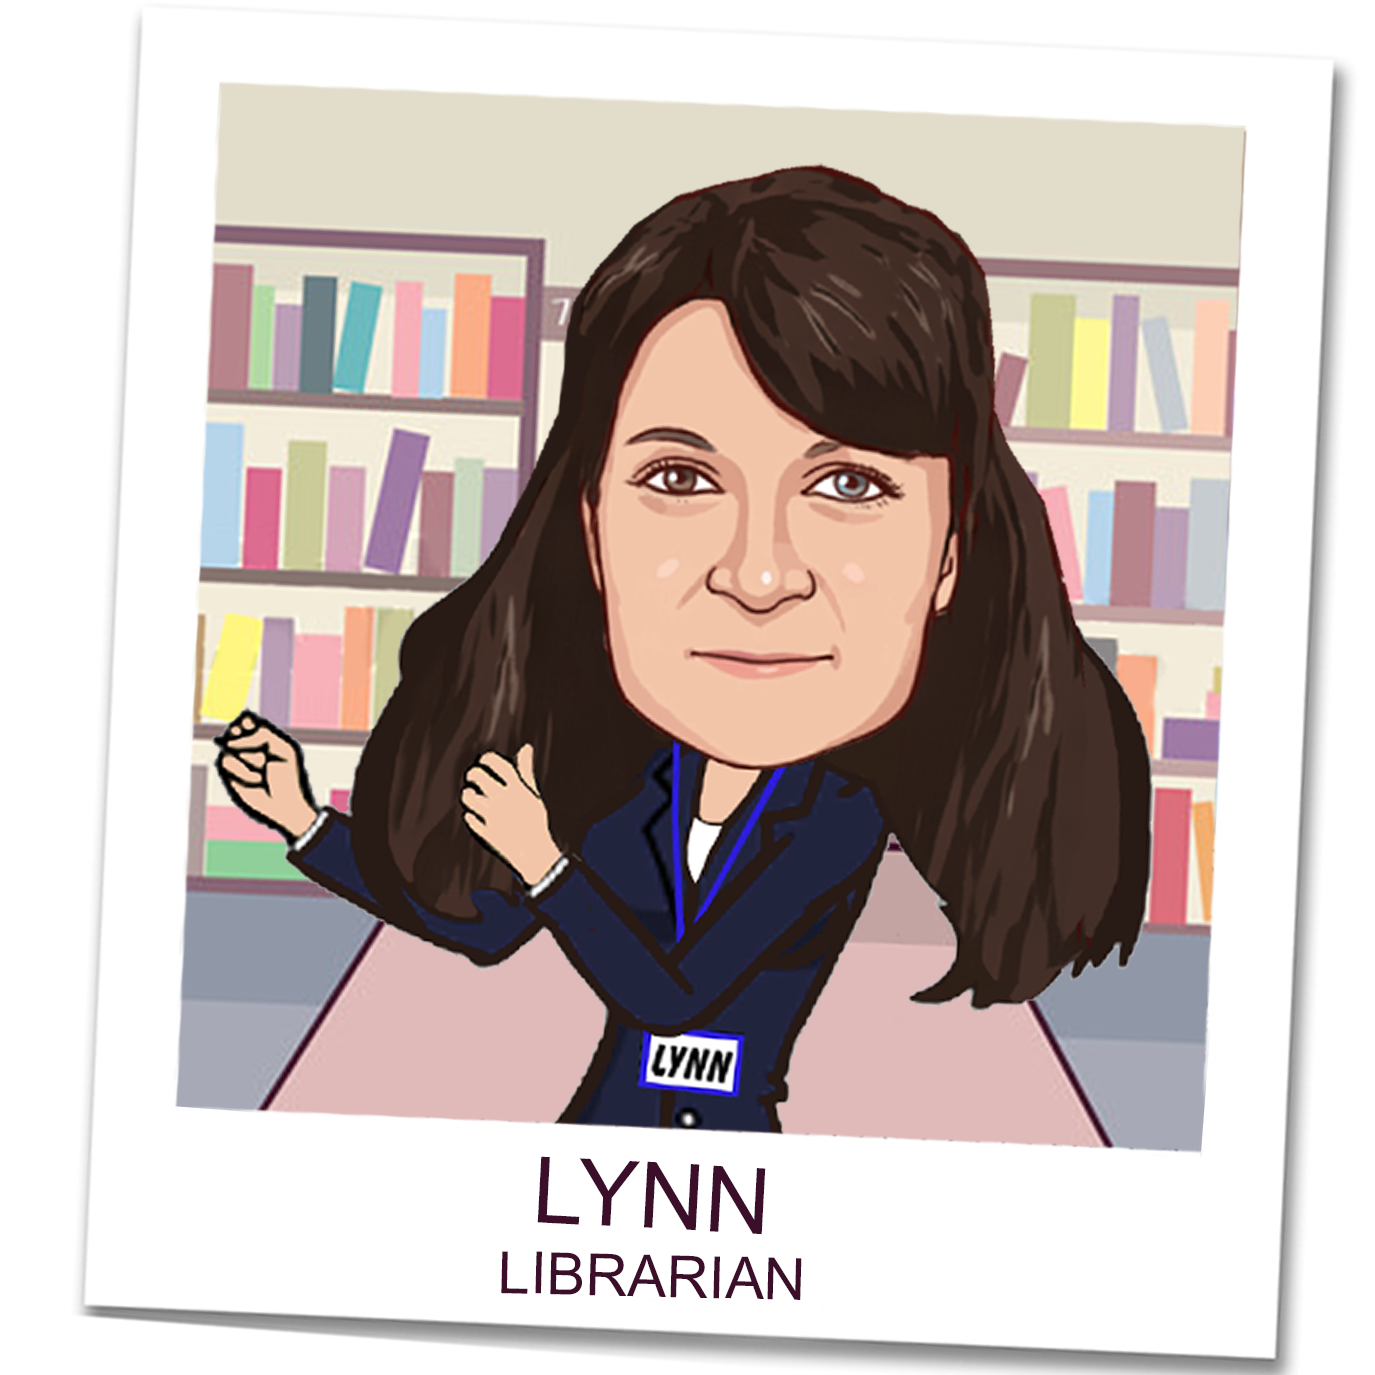 Lynn, Librarian